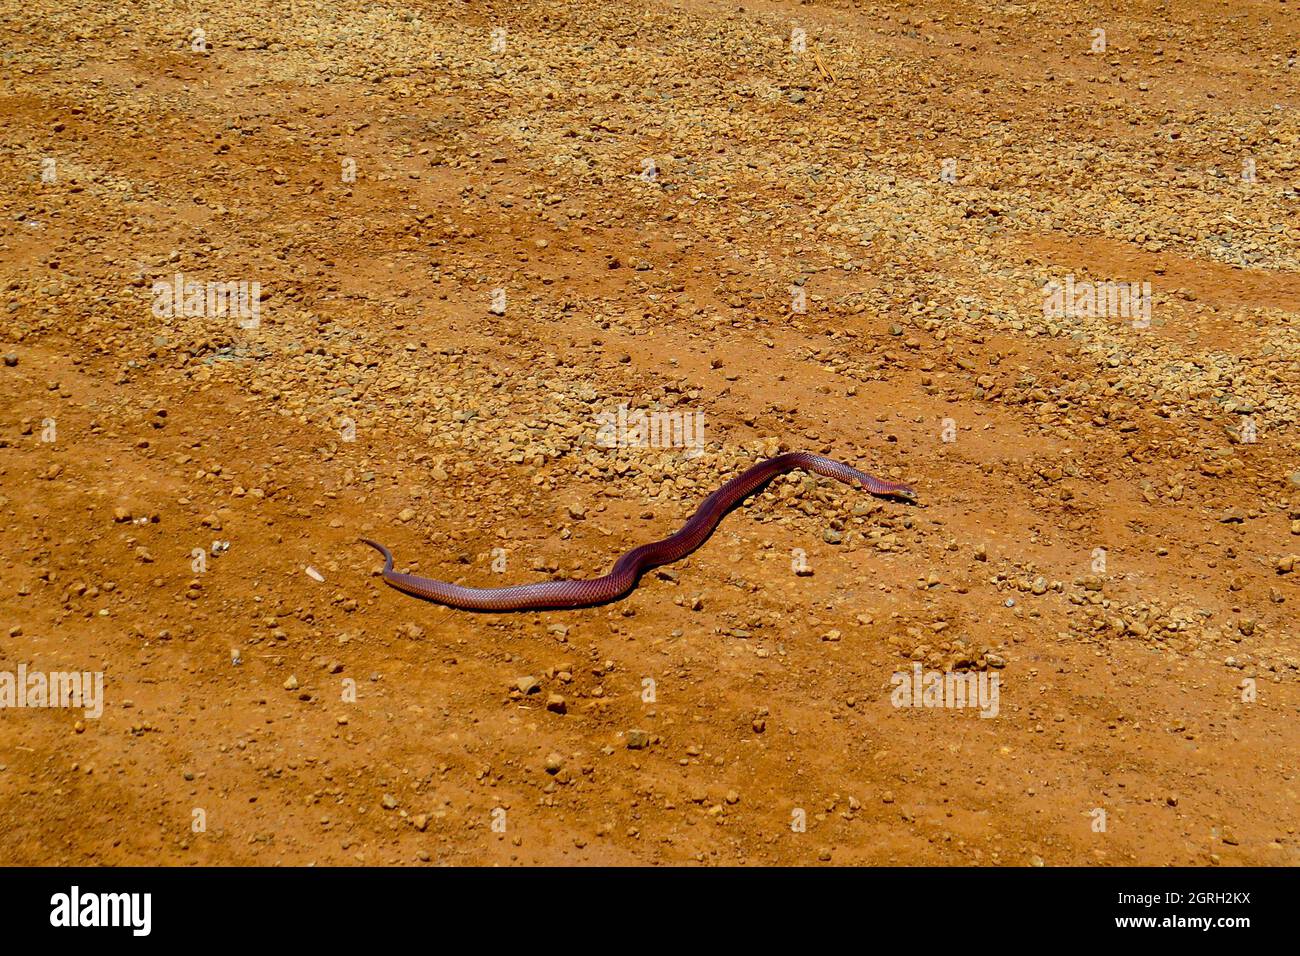 King Brown Snake - Australie Banque D'Images